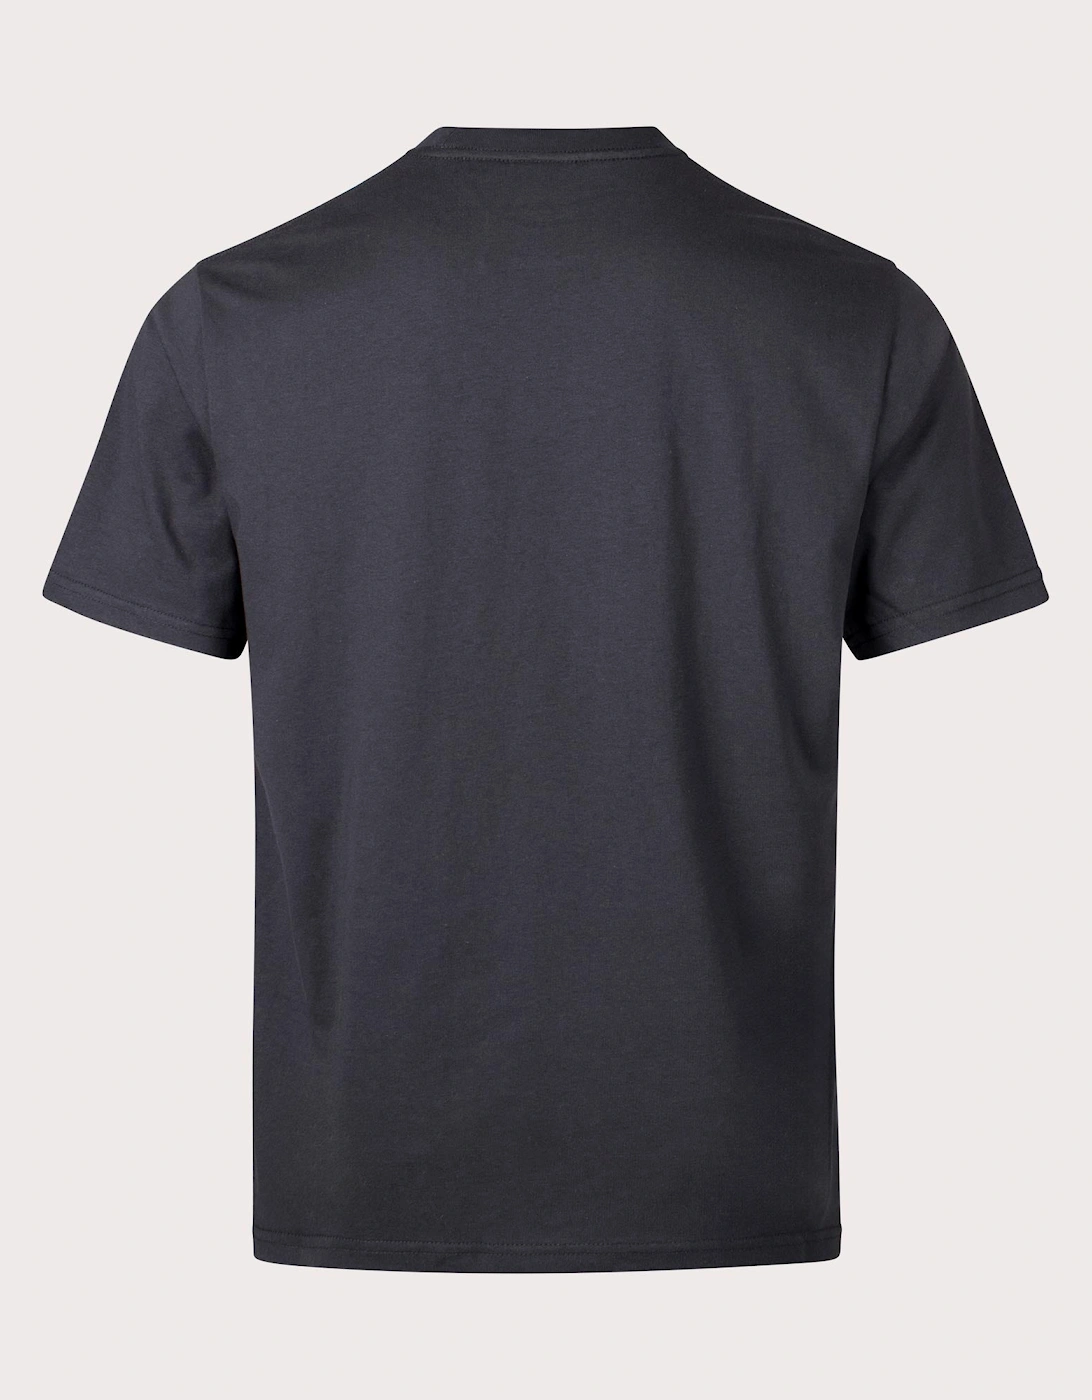 Pixel G T-Shirt